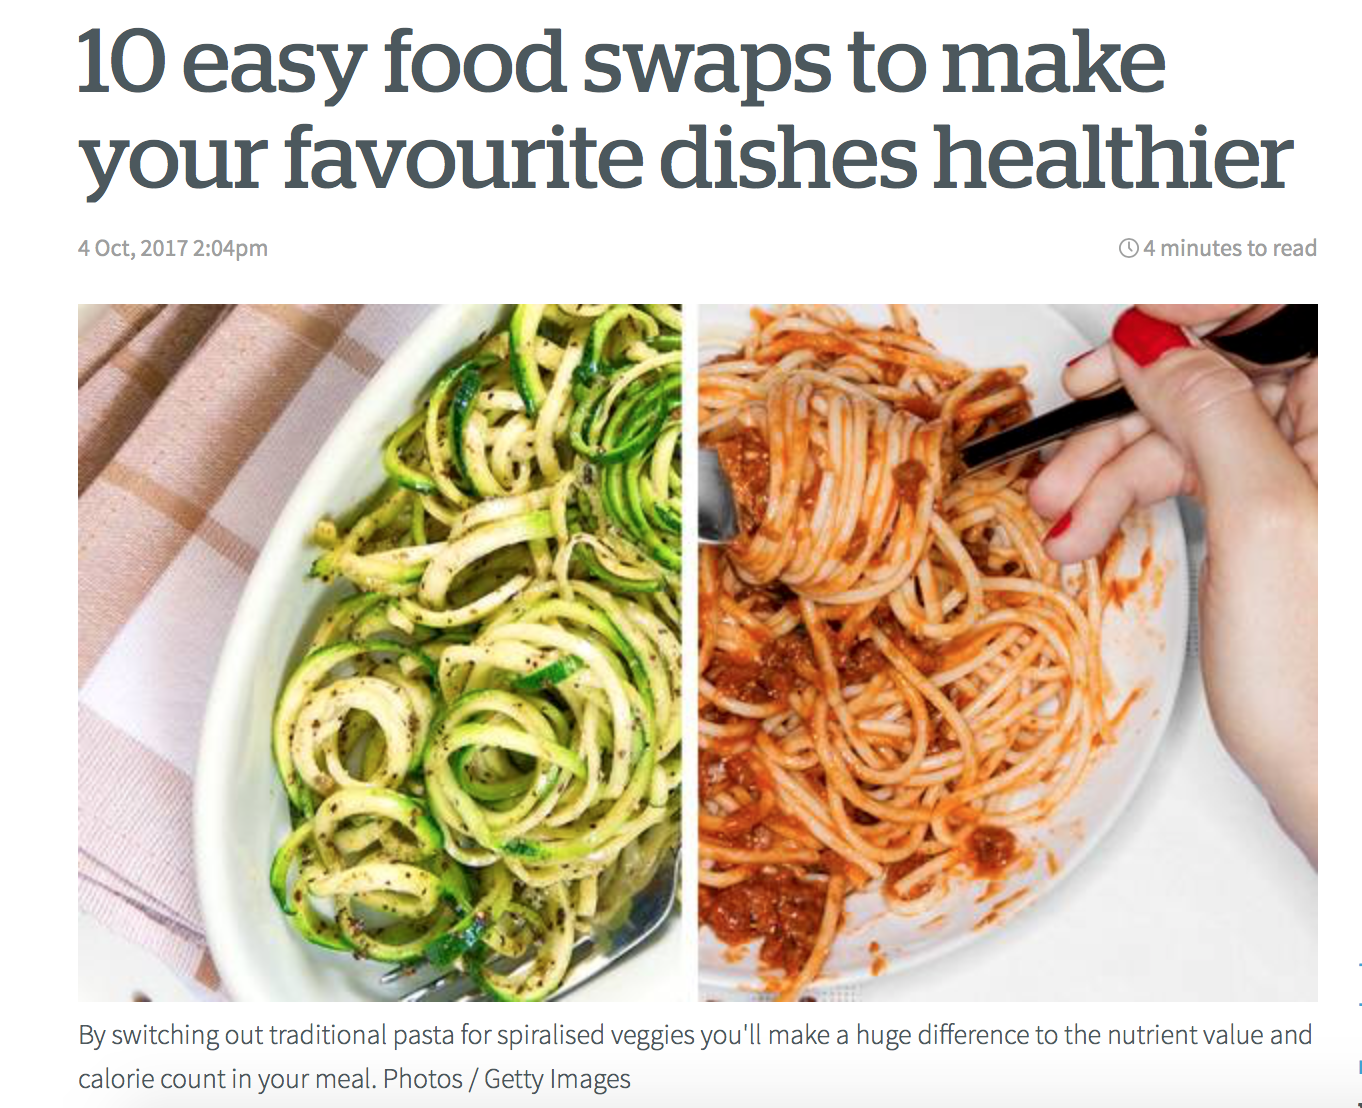 NZ Herald - Healthy Food Swaps with Danijela 